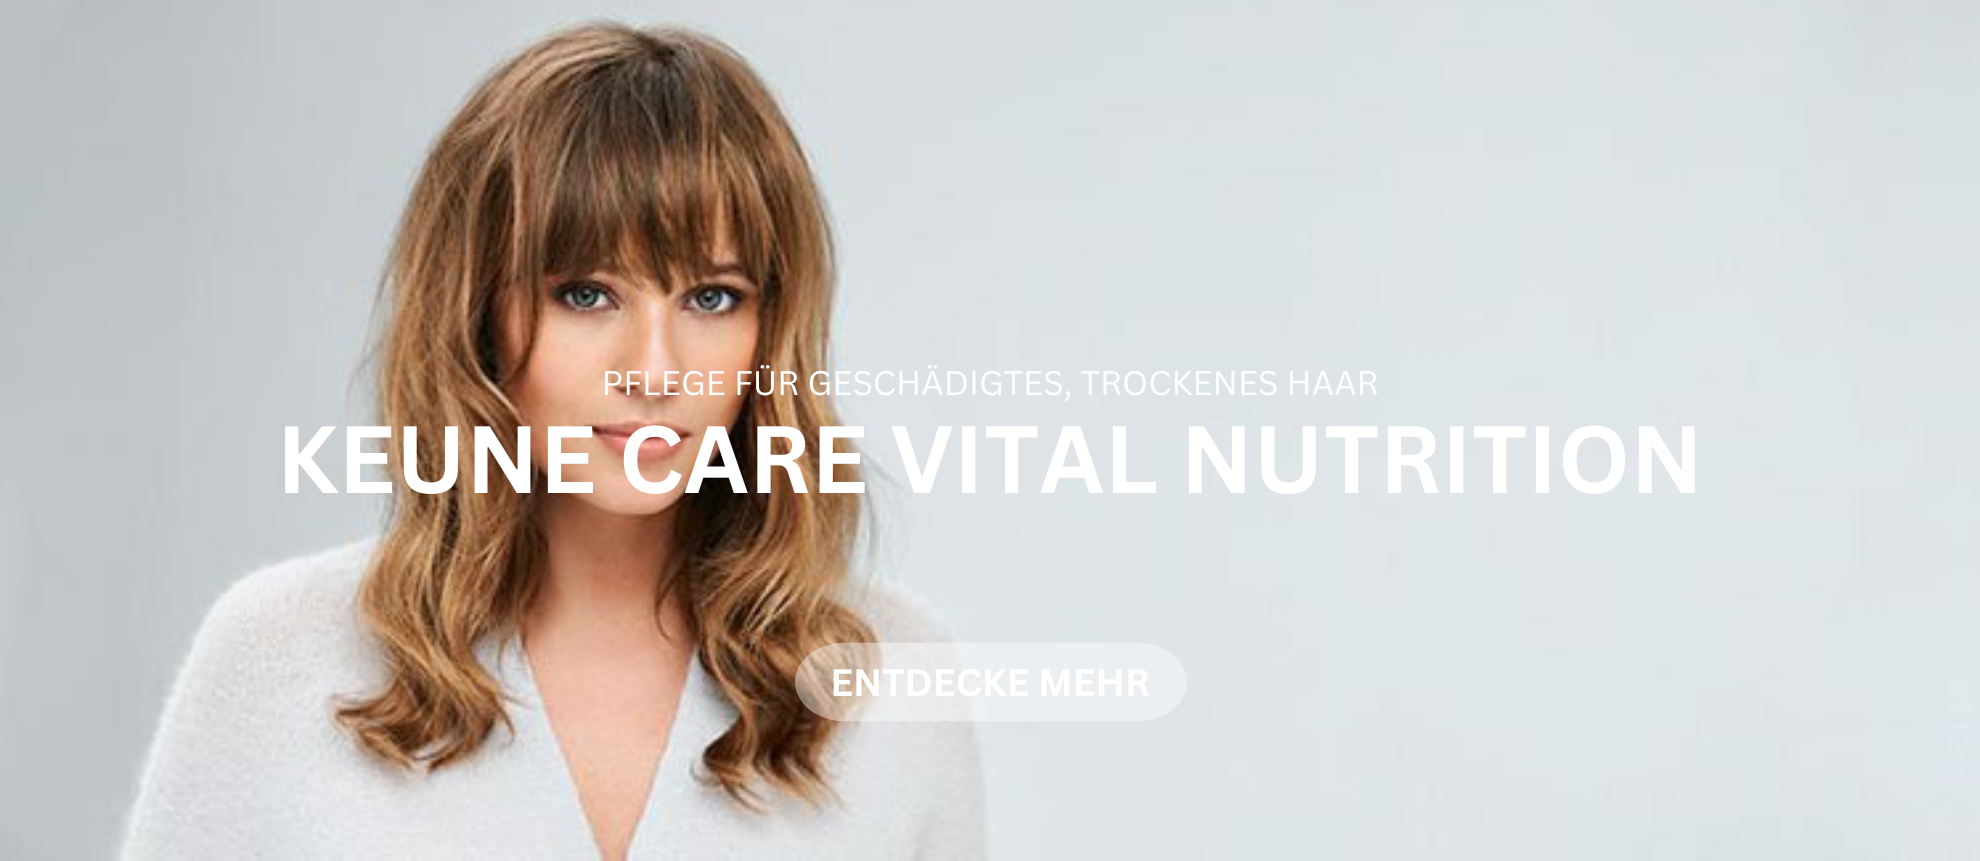 https://www.keune.ch/de/care-vital-nutrition